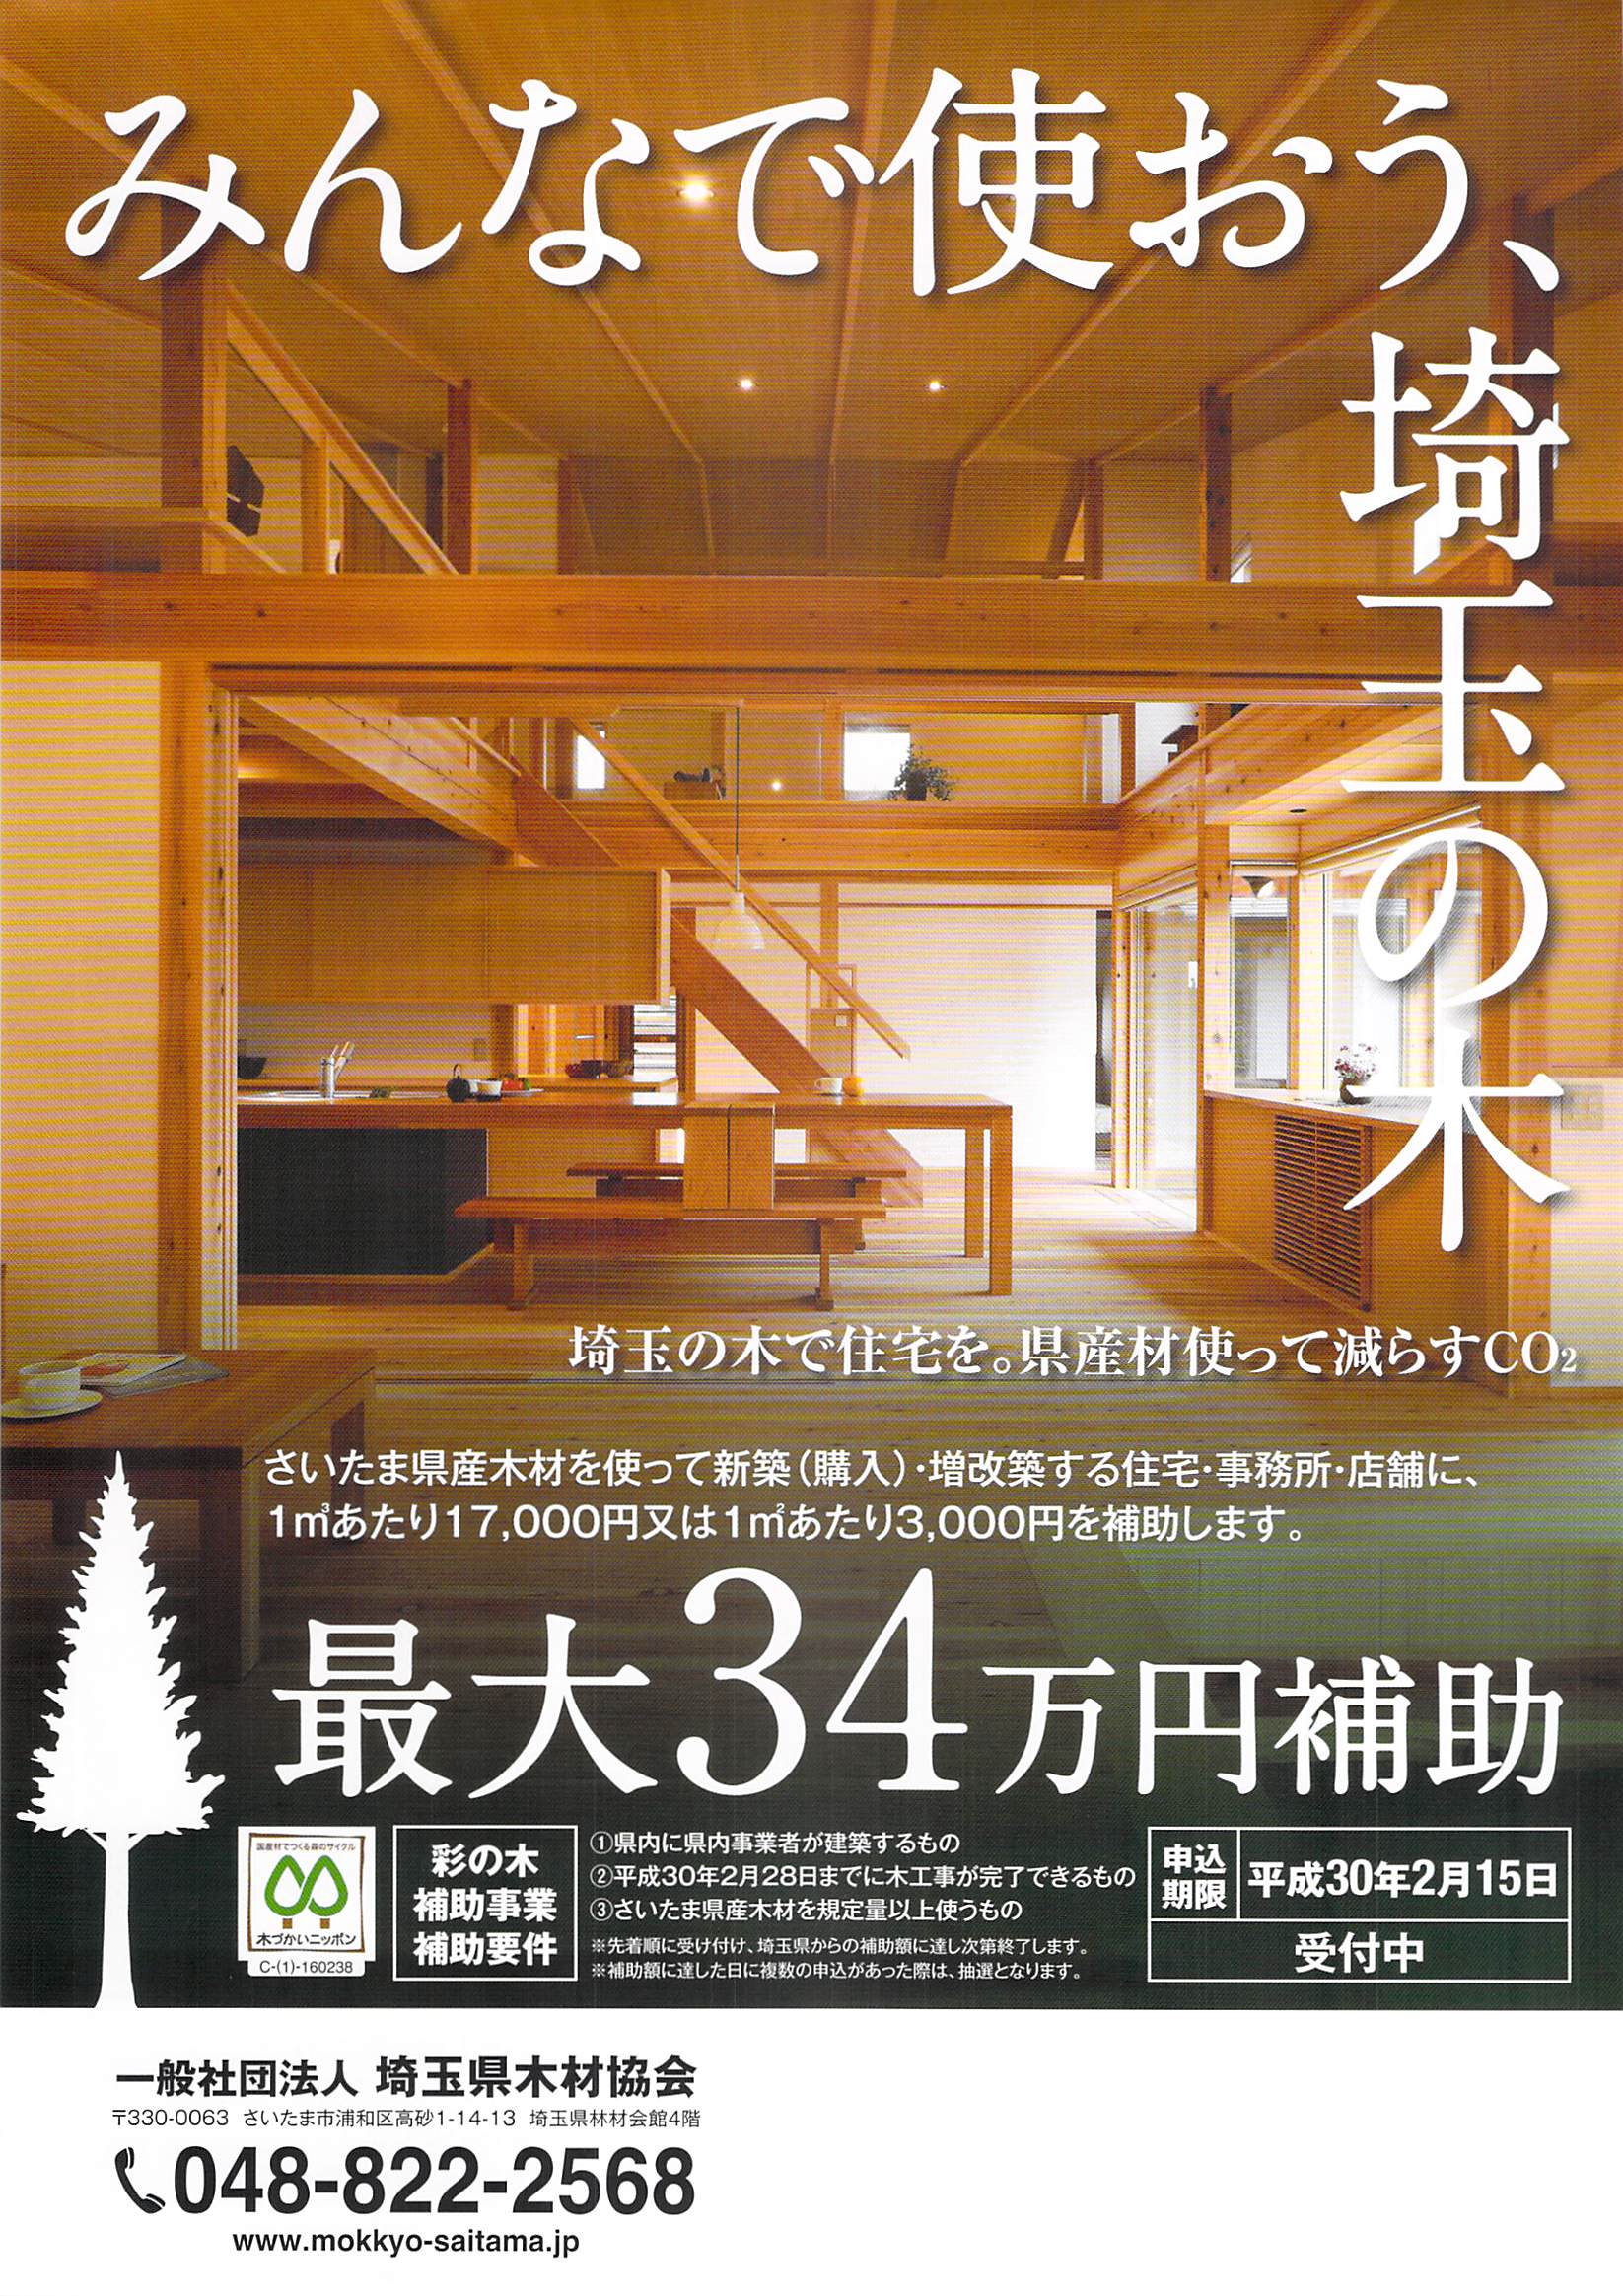 さいたま県産木材を使って新築（購入）・増改築する住宅・事務所・店舗に、1㎥あたり17,000円又は1㎡あたり3,000を補助します。